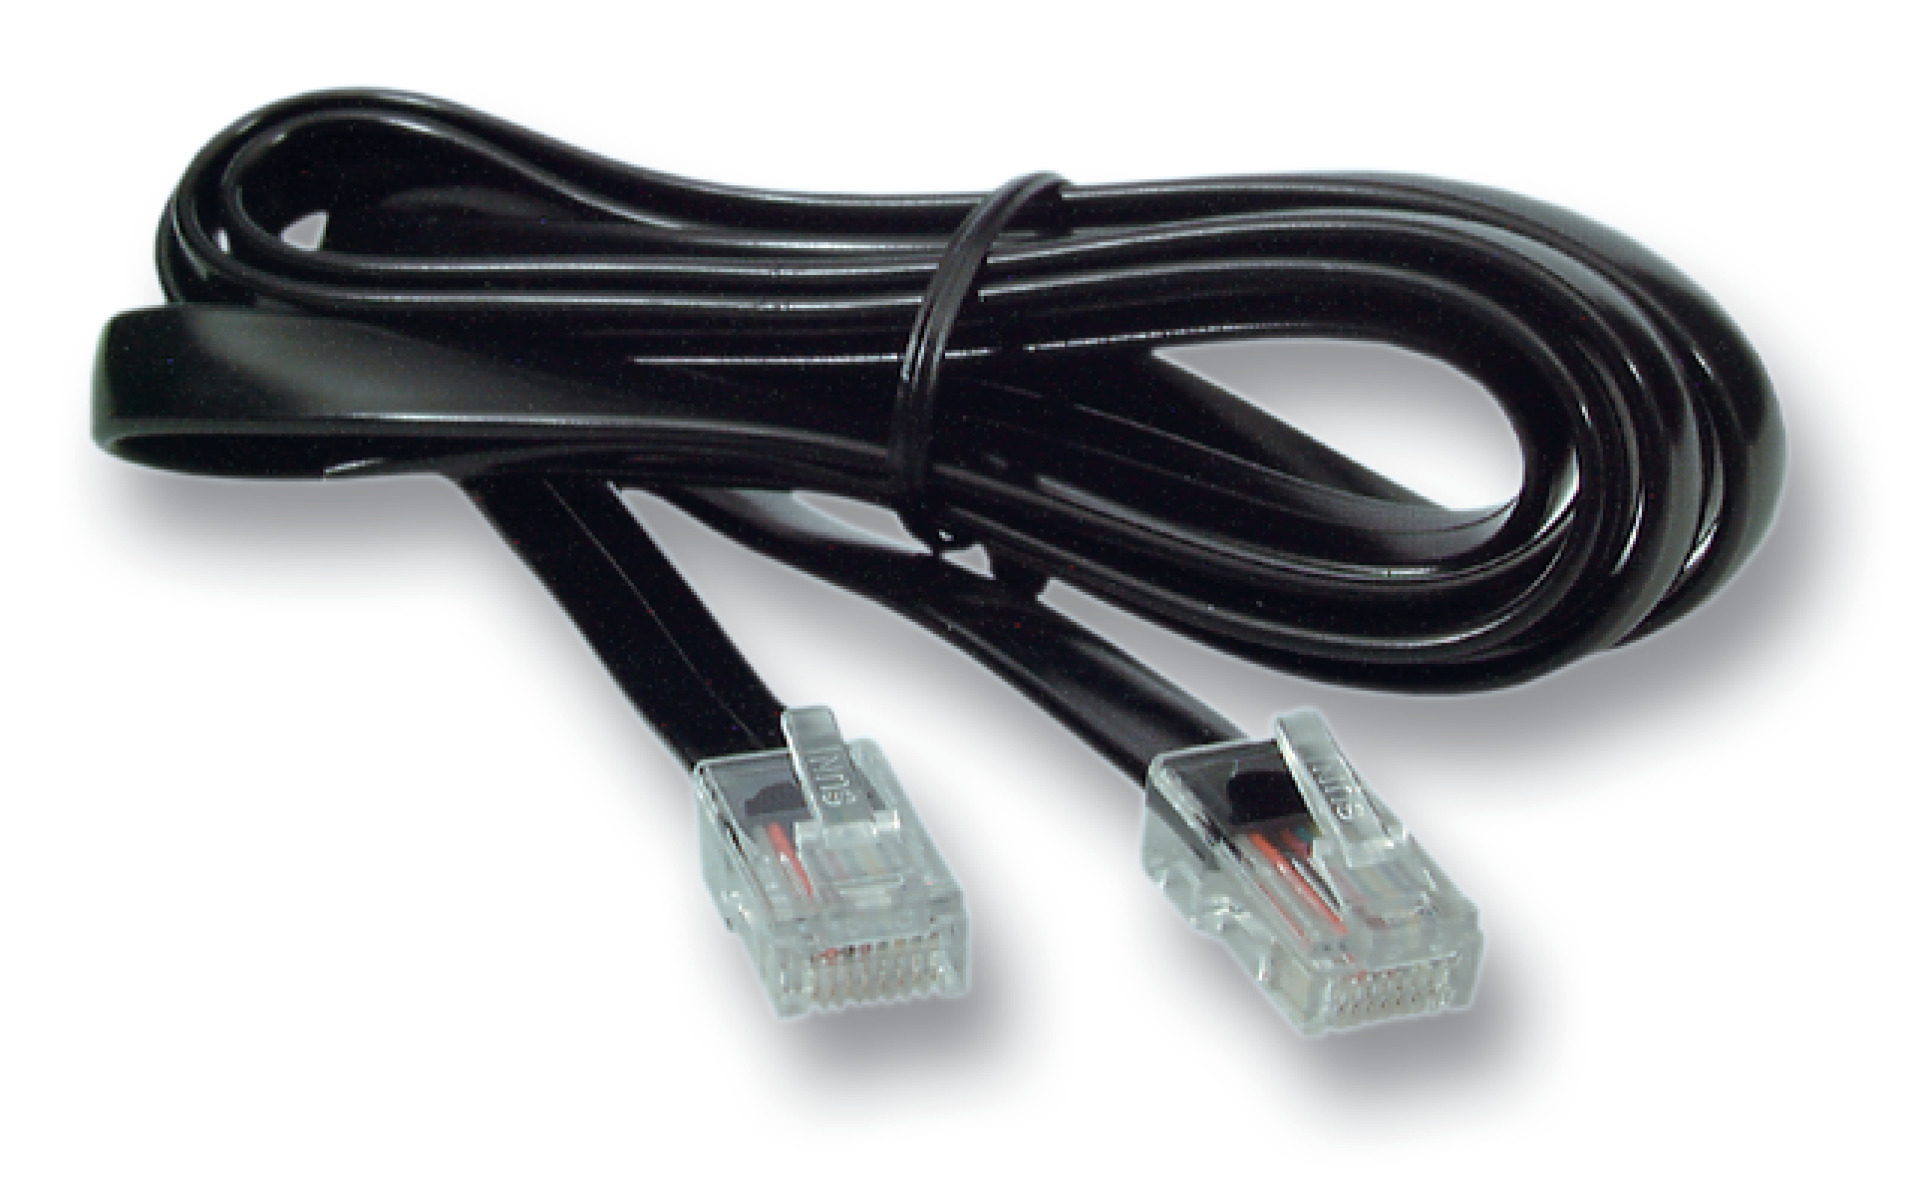 Modular cable RJ45 (8/8)/RJ45 (8/8), 1:1, flat cable, 10m